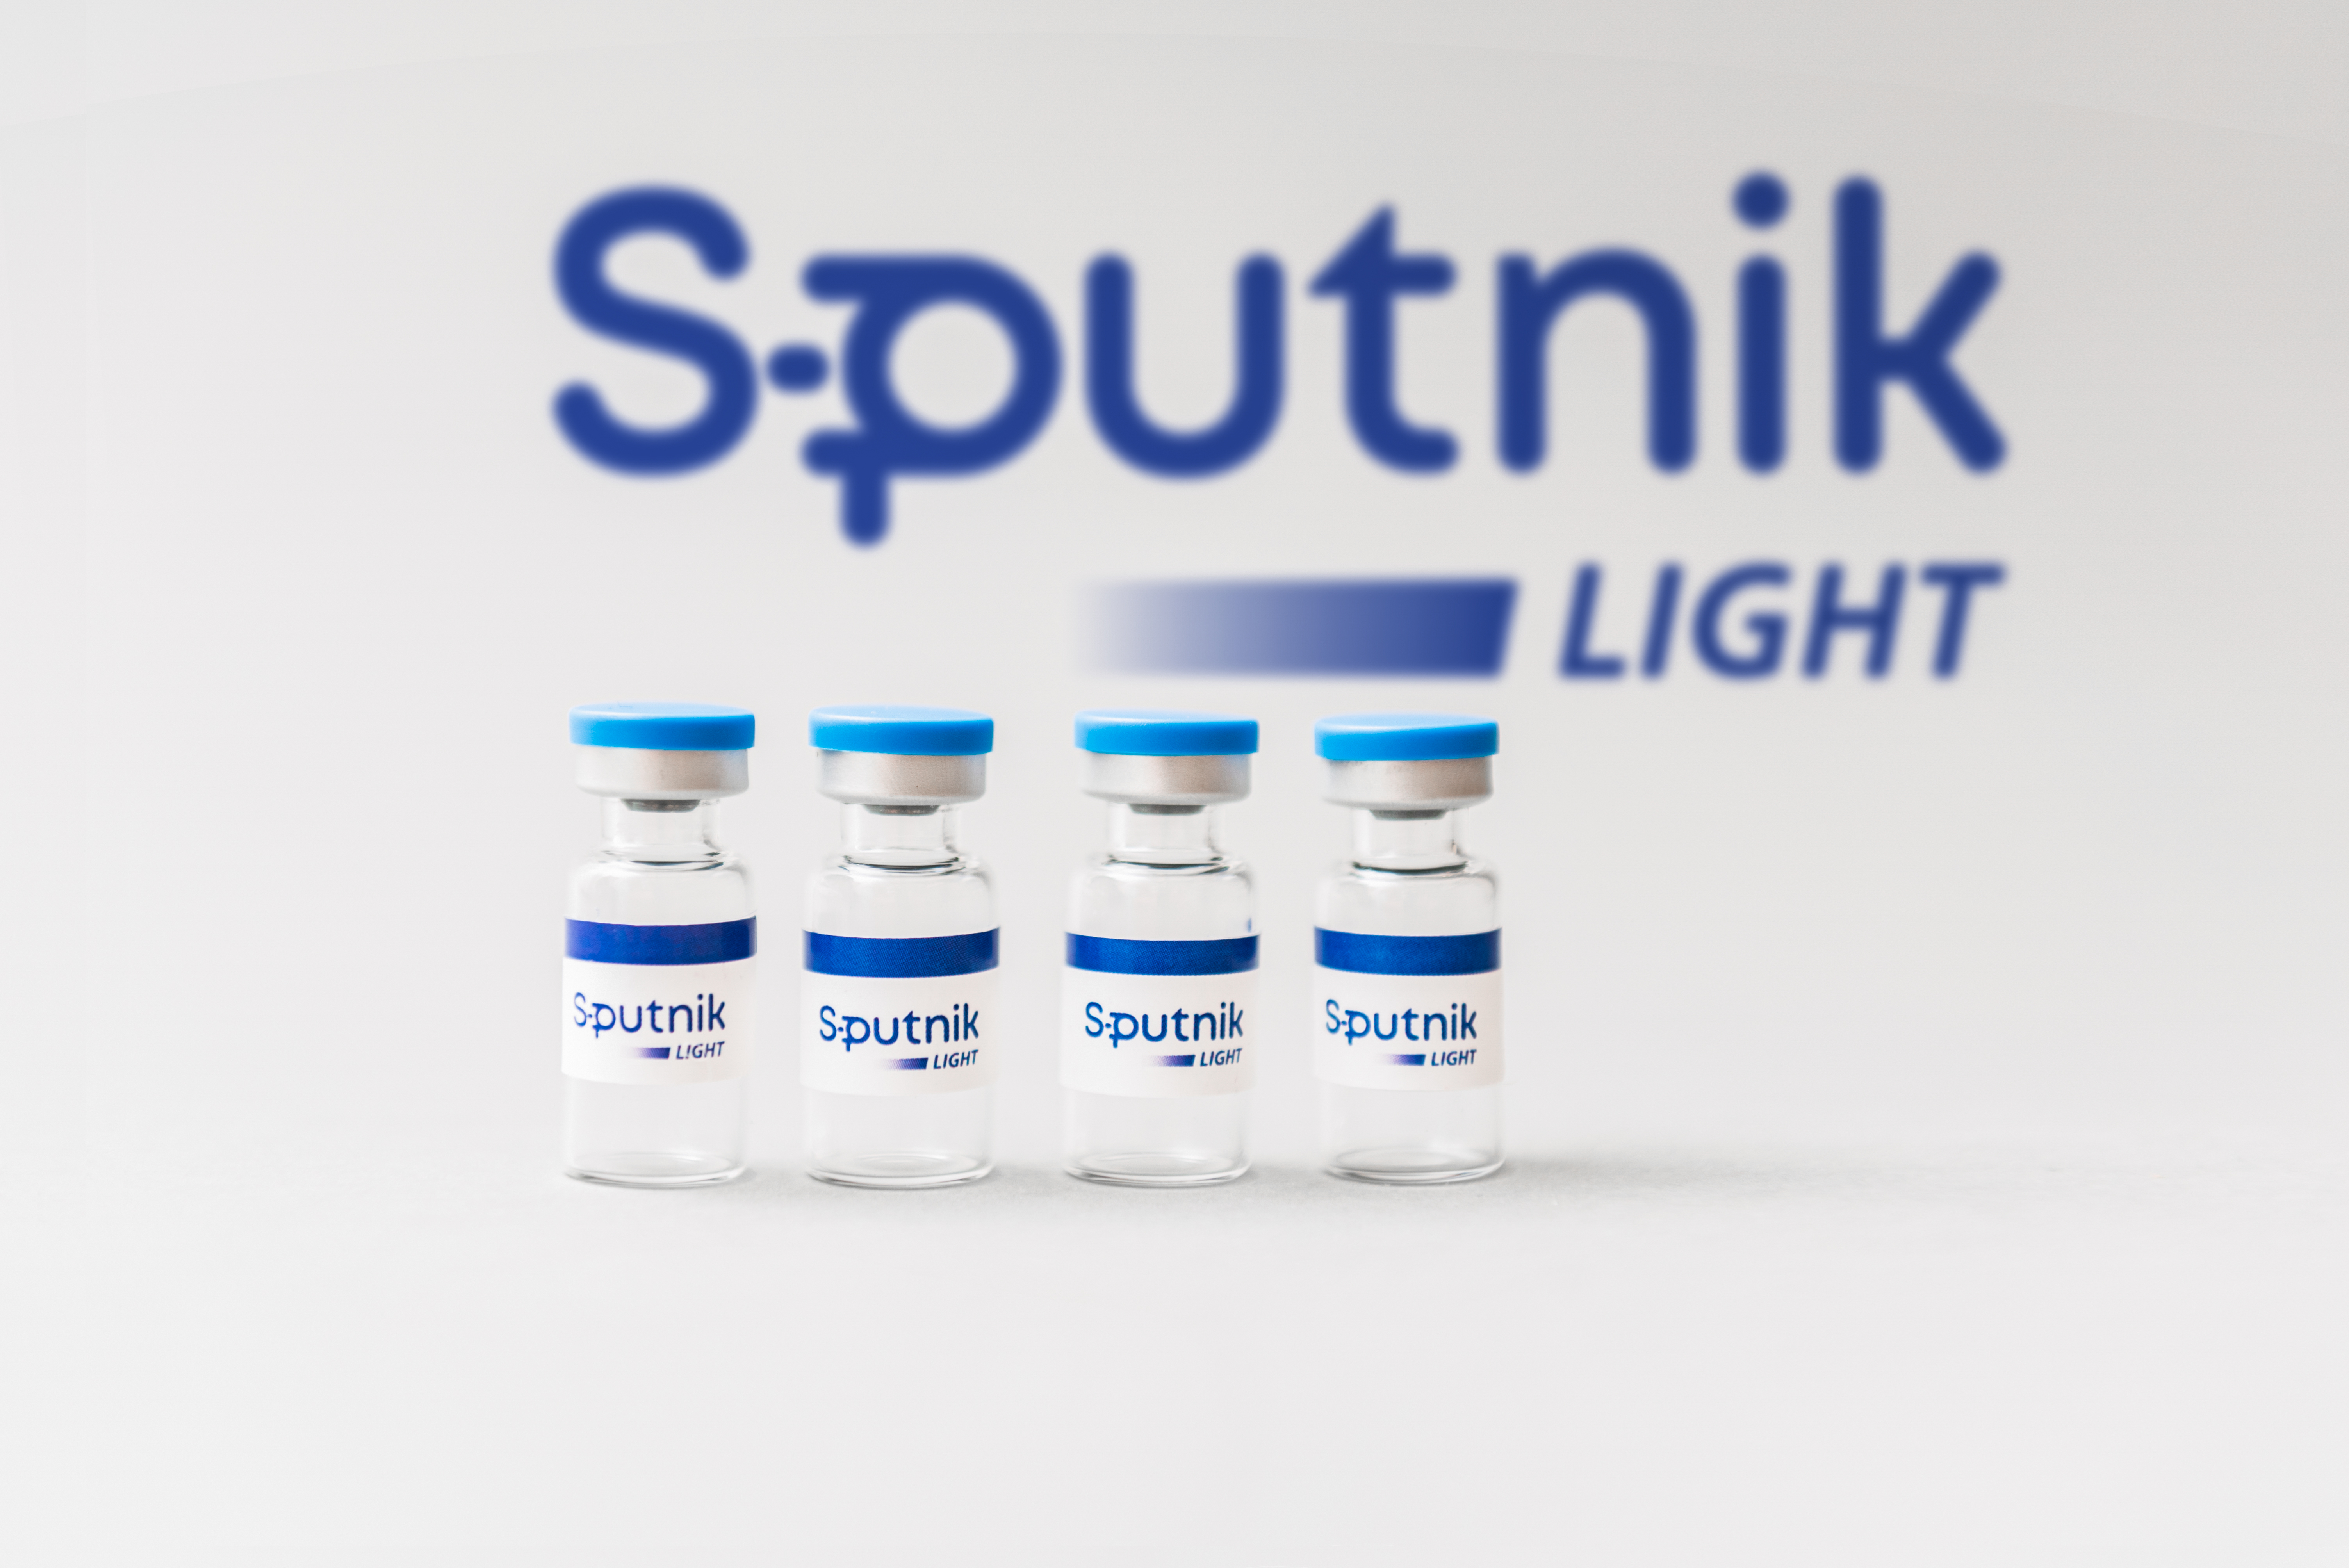 La vacuna de una sola dosis Sputnik Light se encuentra en estudio de Fase III y se esperan los datos preliminares para mayo de este año. La eficacia demostrada con esta inoculación monovalente es del 79,4% 